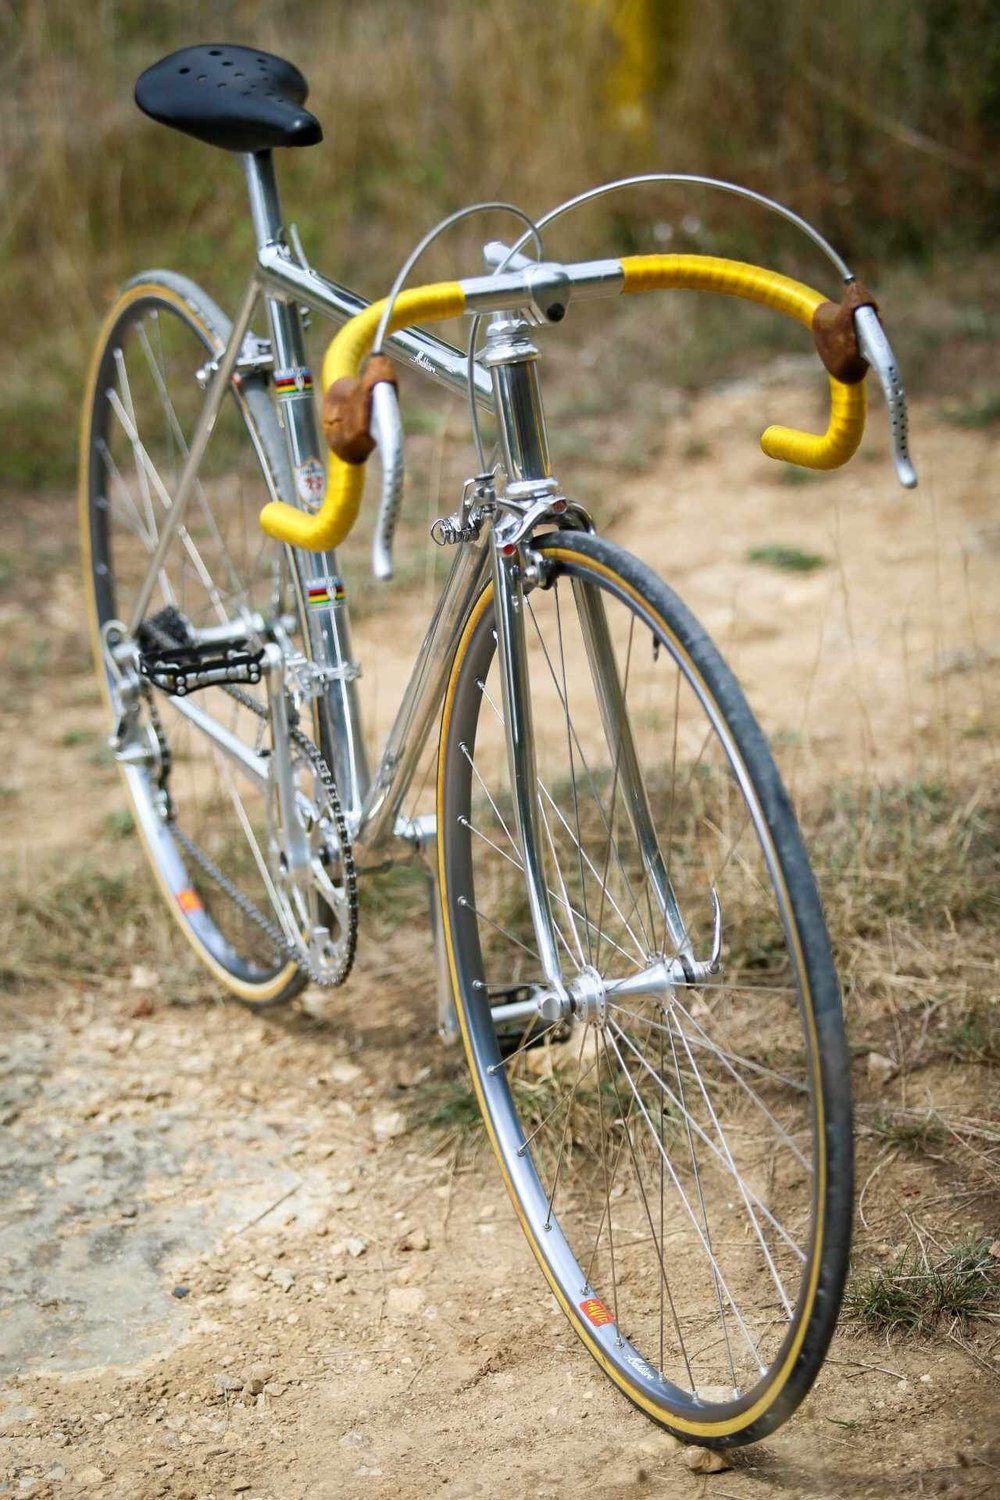 1983 racing bicycle - Handmade André Sablière - 6,7kg